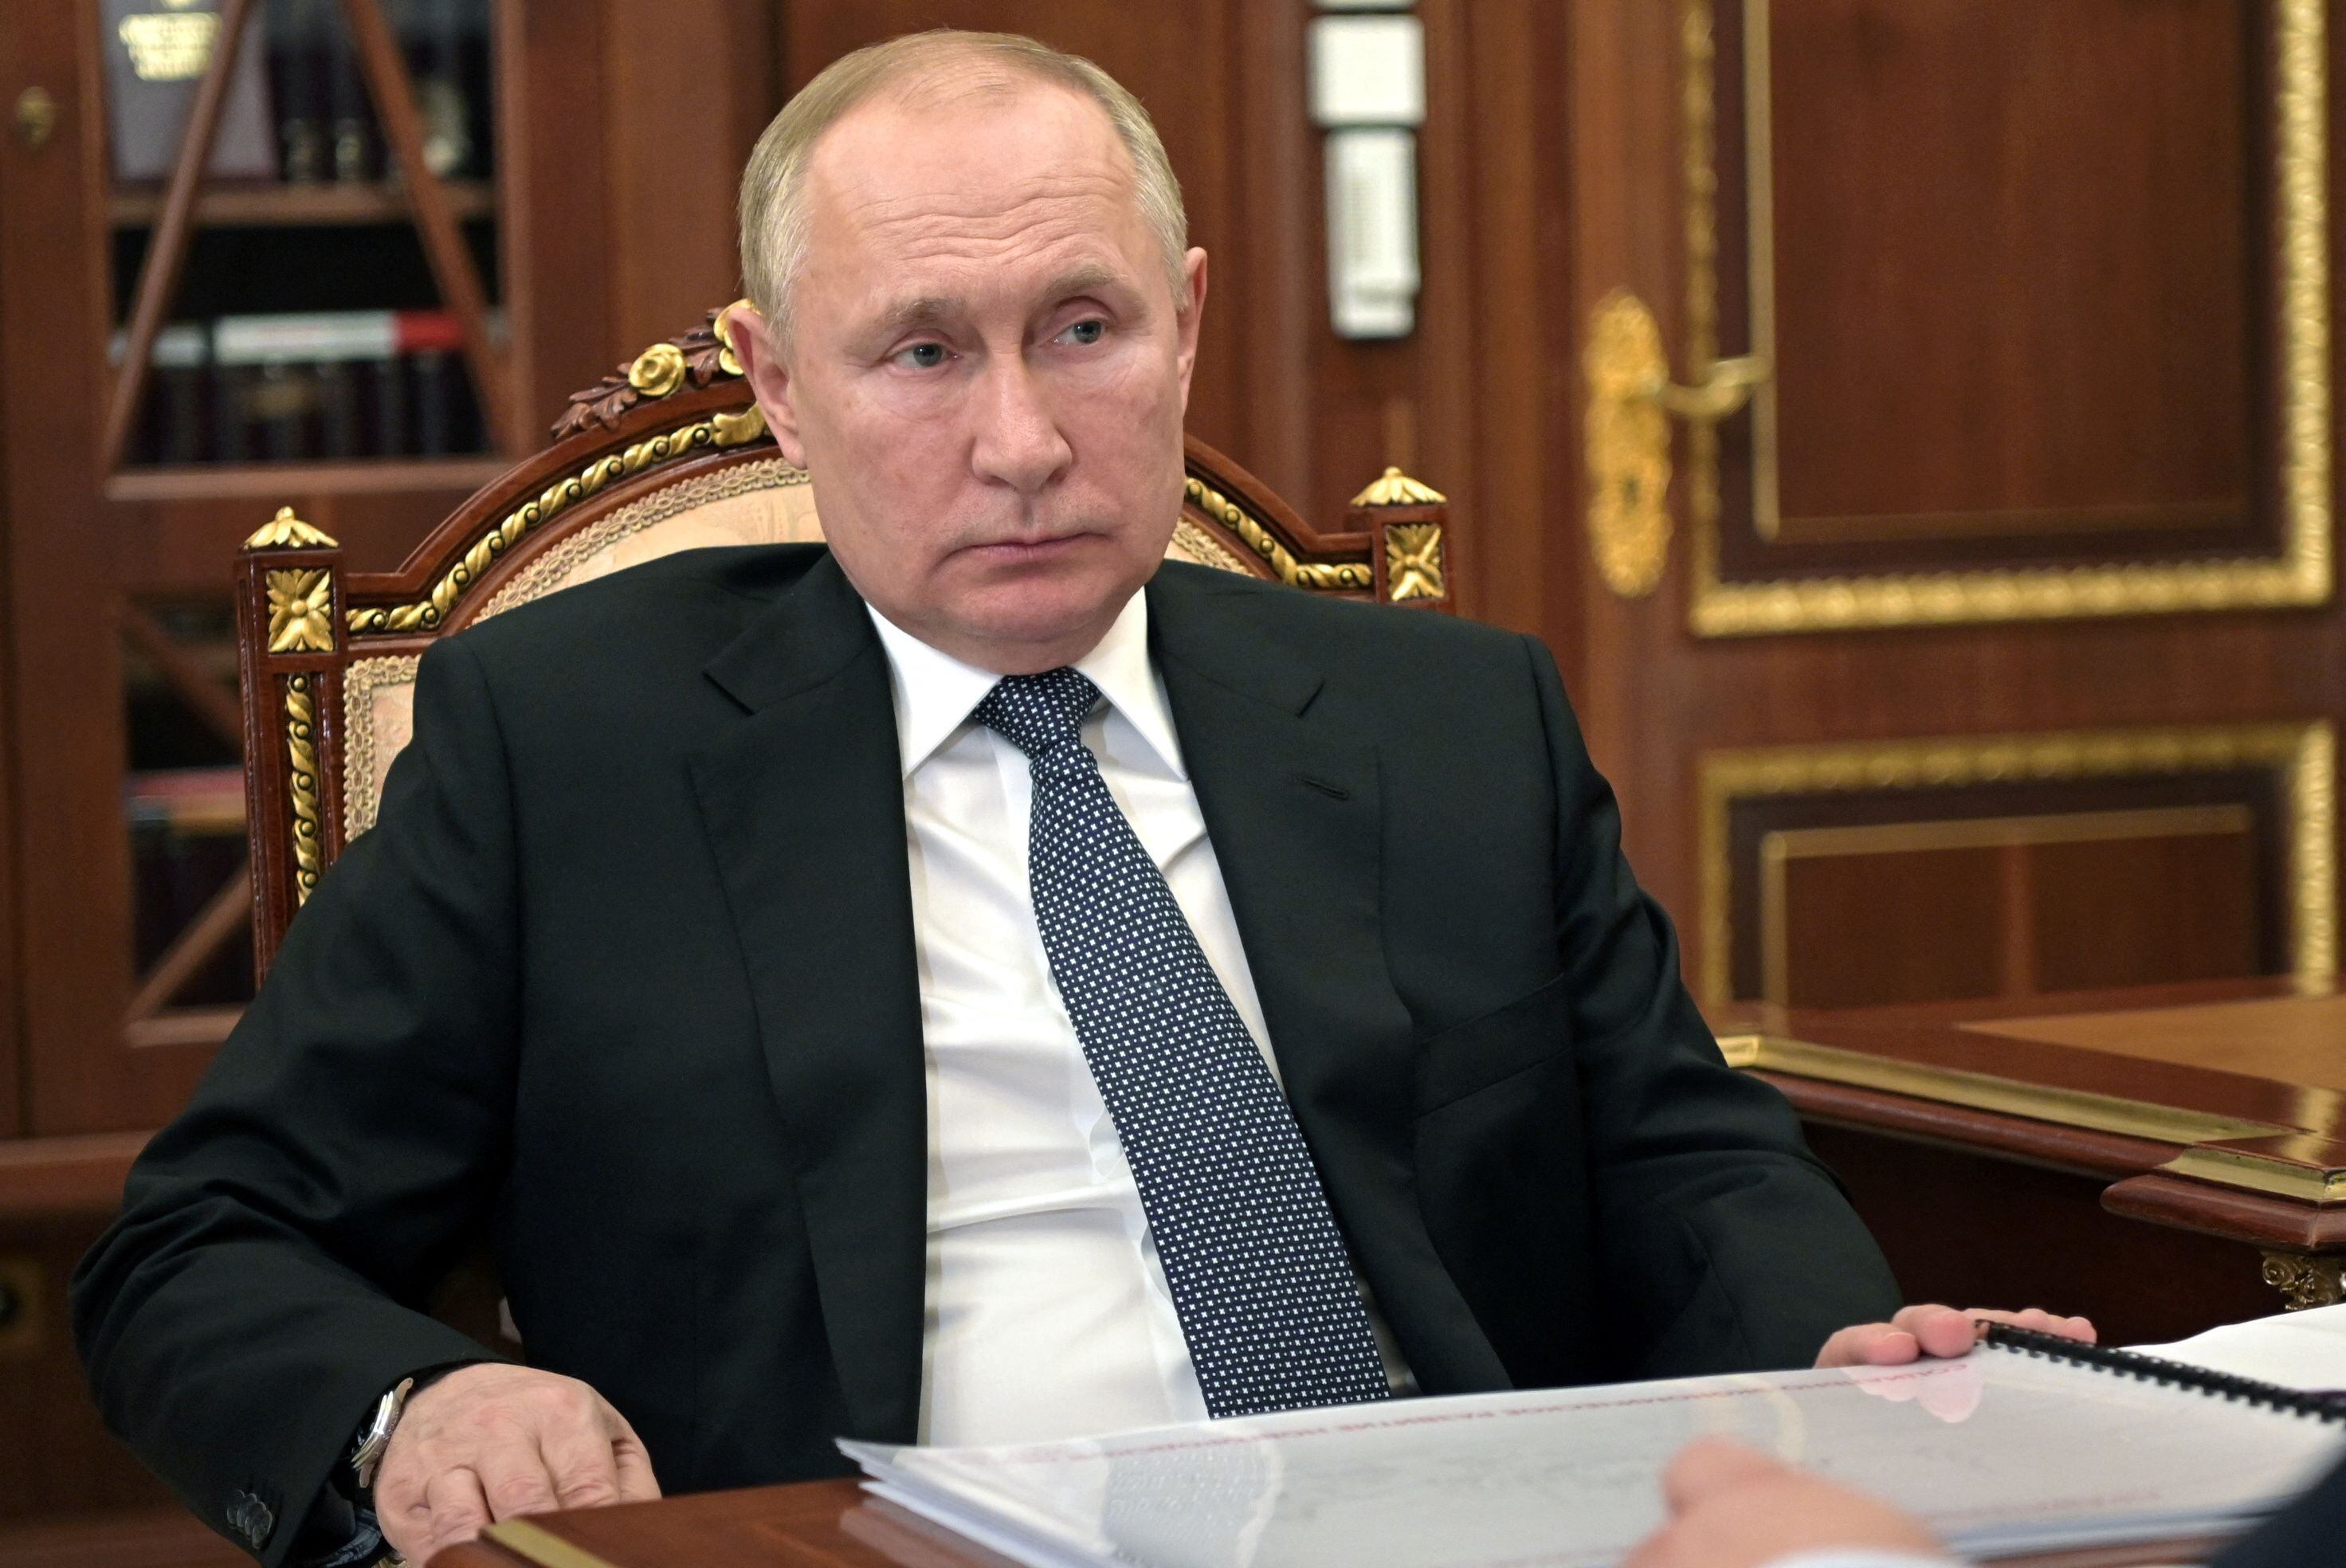 El presidente ruso, Vladímir Putin, durante una reunión en el Kremlin en Moscú, Rusia, el 22 de marzo de 2022. Sputnik/Mikhail Klimentyev/Kremlin vía REUTERS